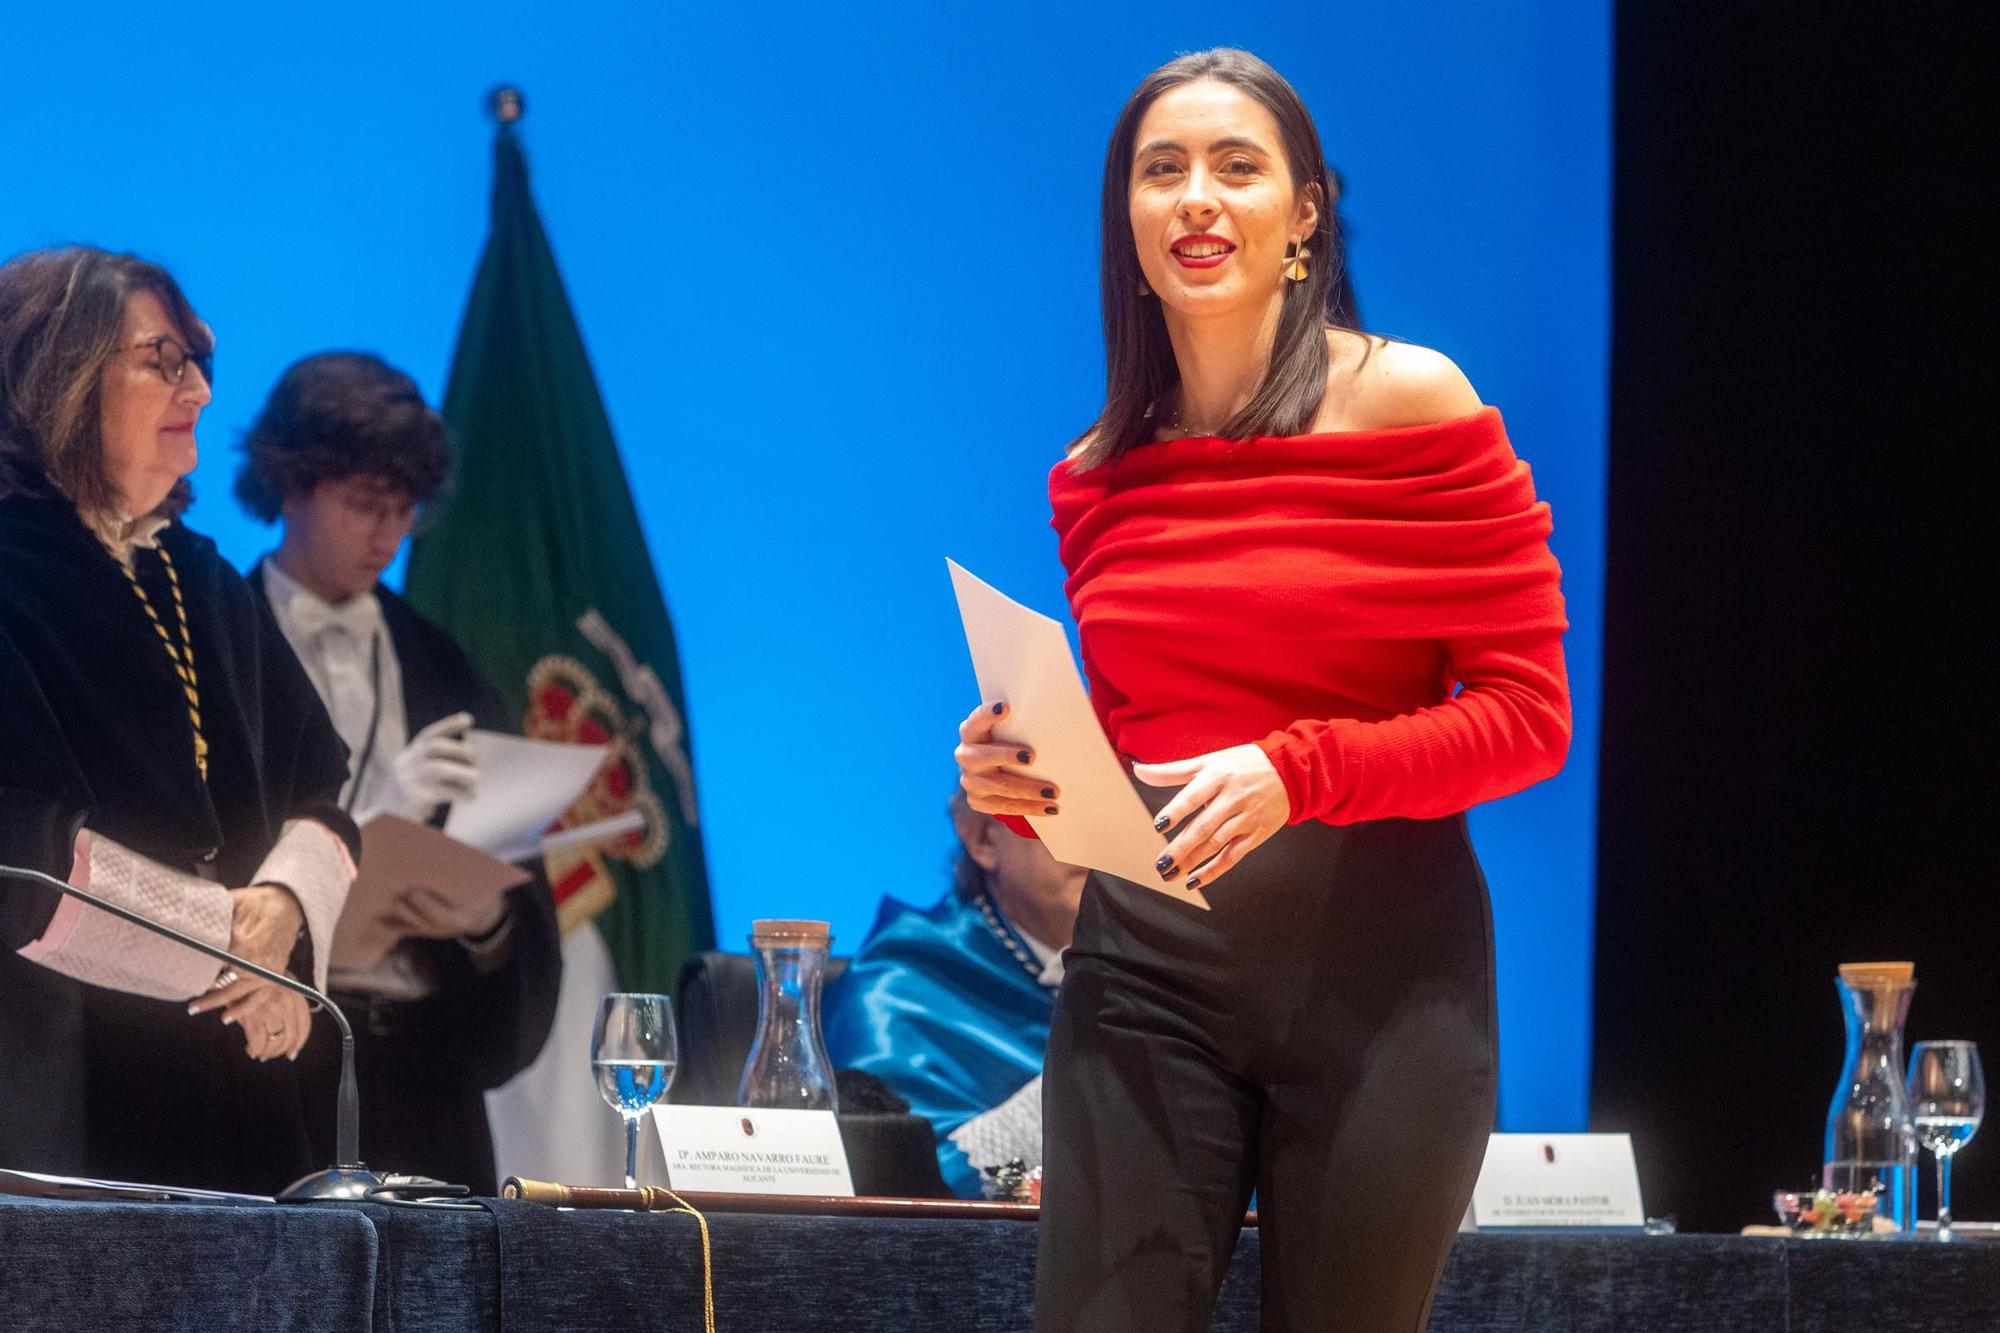 La Universidad de Alicante ha investido como doctora honoris causa a la enfermera María Paz Mompart García